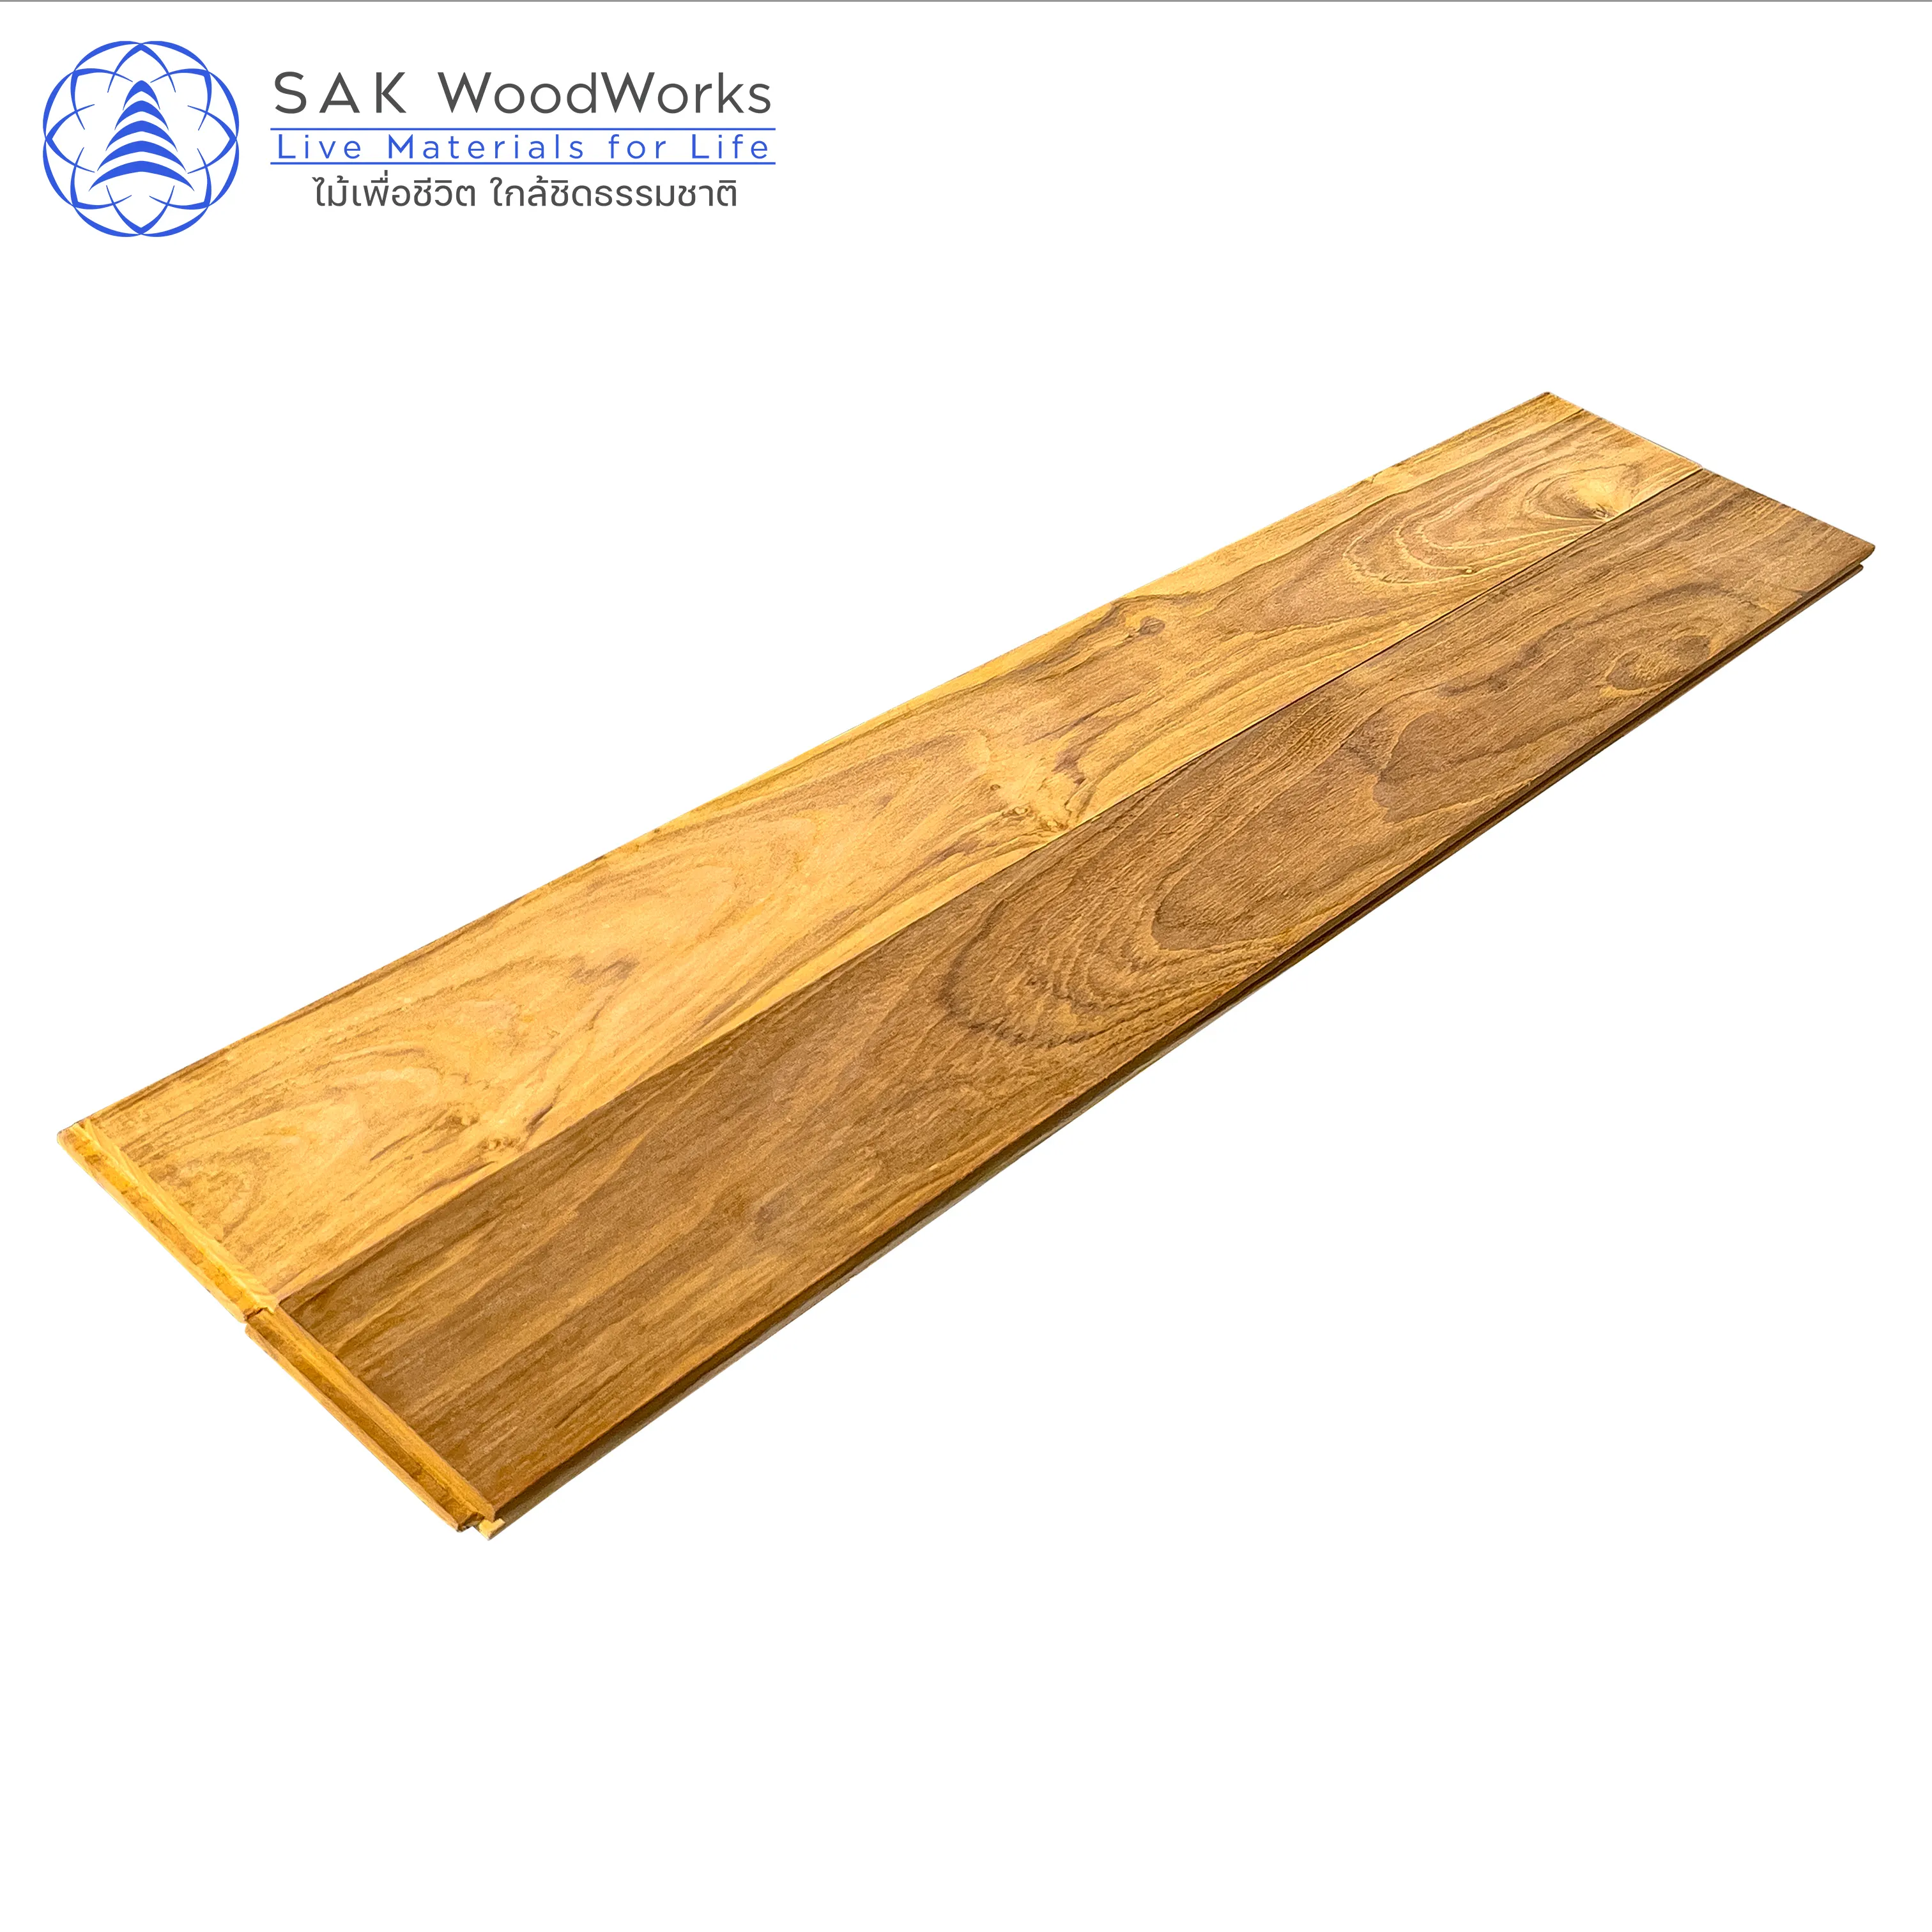 ألواح باركيه من خشب الساج التايلاندي من SAK WoodWorks 15x90 x mm. أرضيات باركيه خشب الساج الذهبي الفاخرة مع شهادة FSC